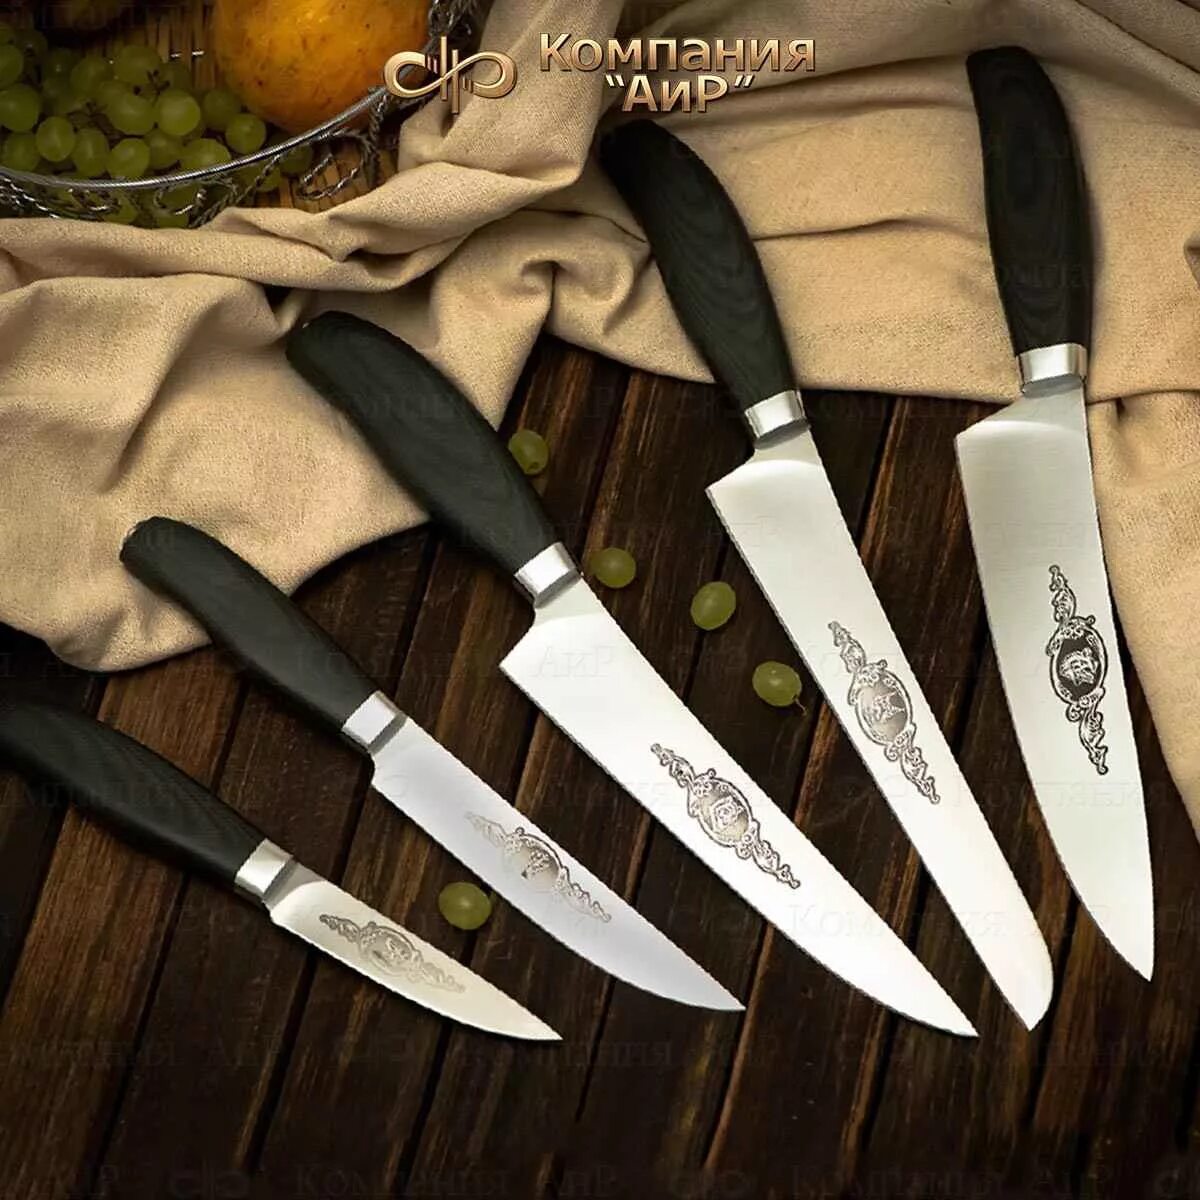 Ножи какой фирмы. Ножи АИР Златоуст. Нож кухонный км-7035. Поварская тройка ножей Златоуст. Поварской нож "Phantom Chef’s Knife".